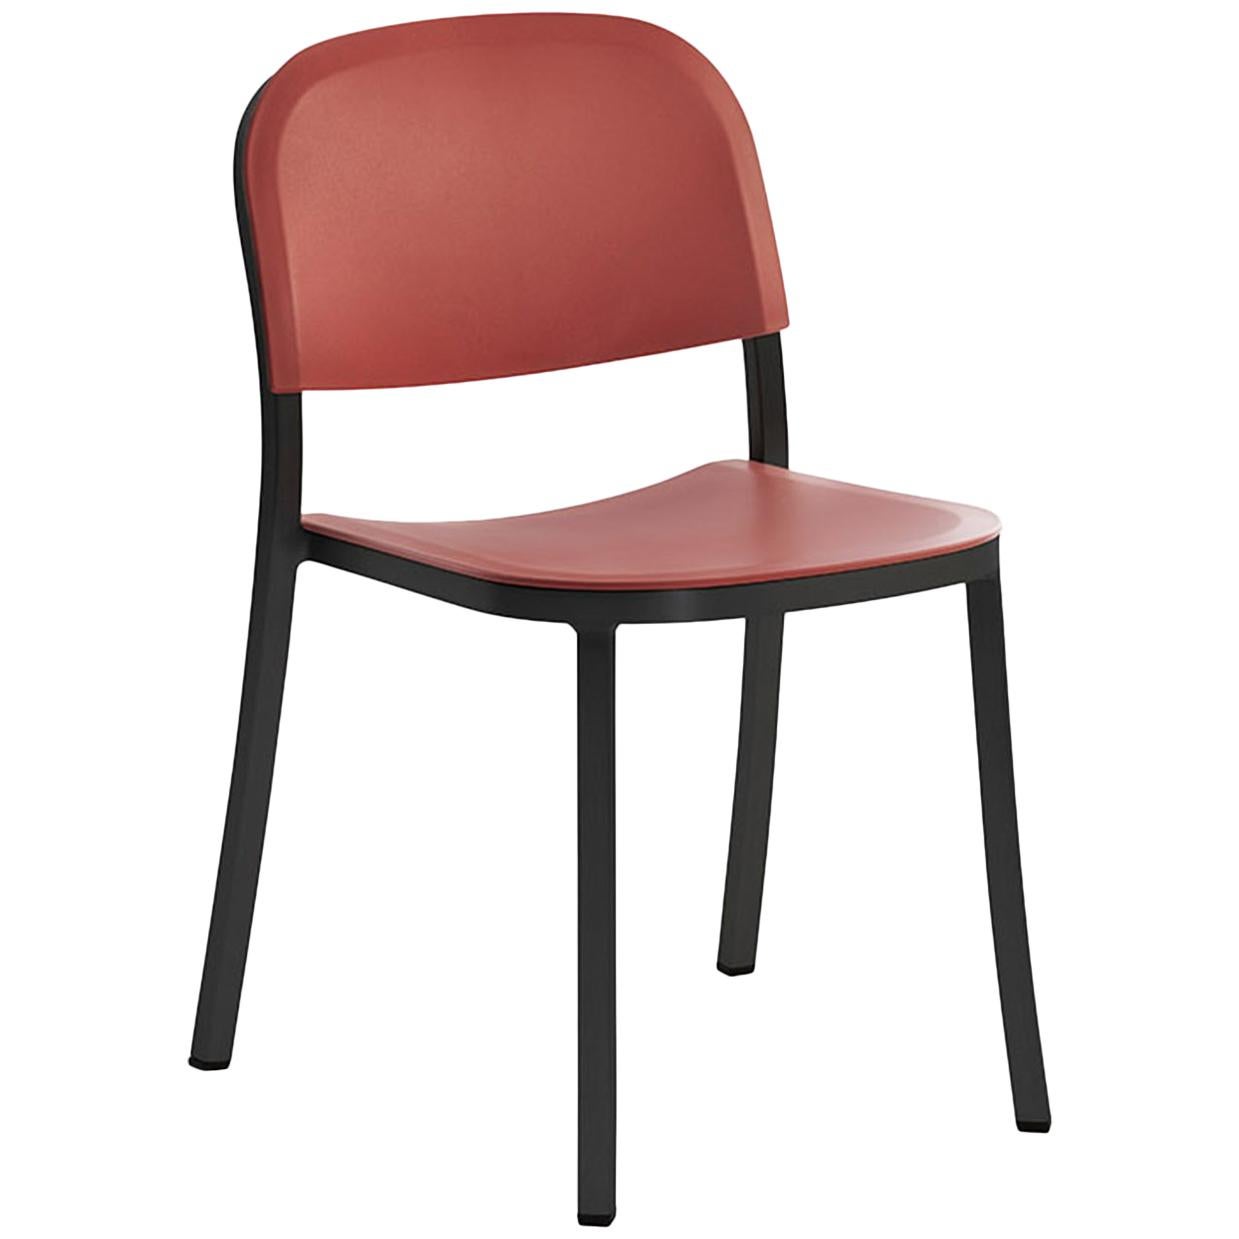 Chaise empilable Emeco de 2,54 cm en aluminium foncé et ocre rouge de Jasper Morrison